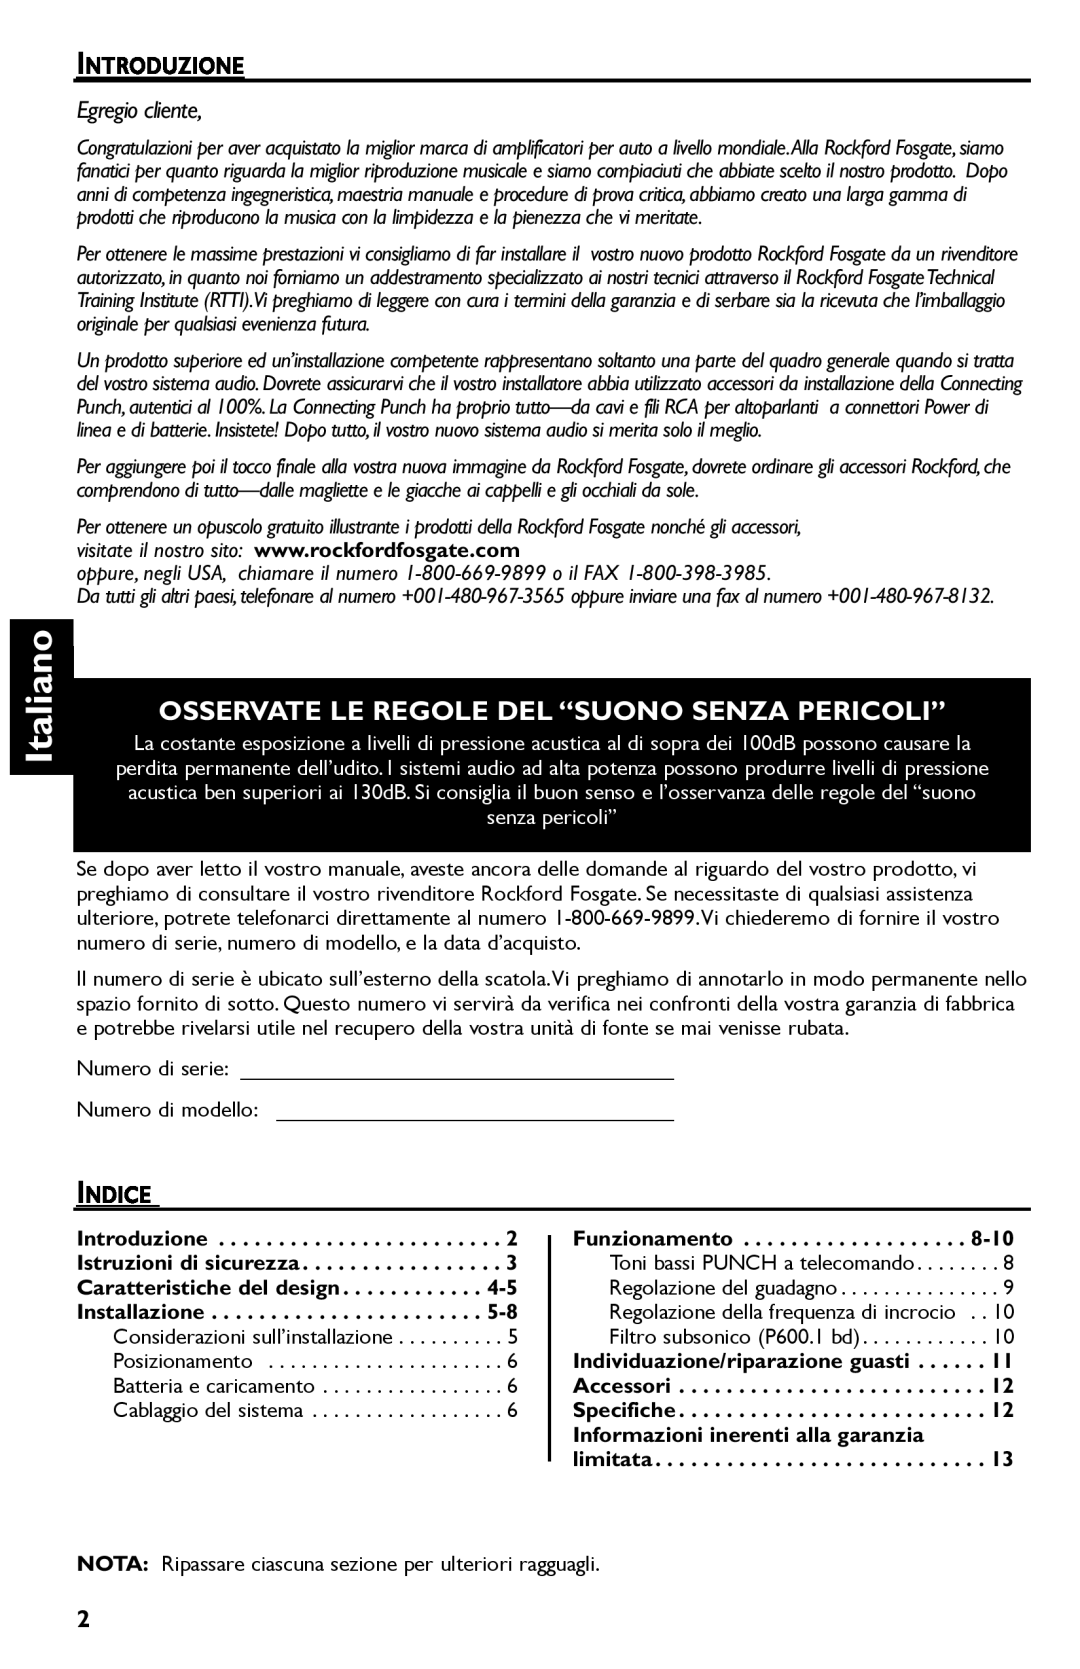 Rockford Fosgate P600..I bd manual Italiano, Osservate Le Regole Del “Suono Senza Pericoli”, Introduzione, Egregio cliente 